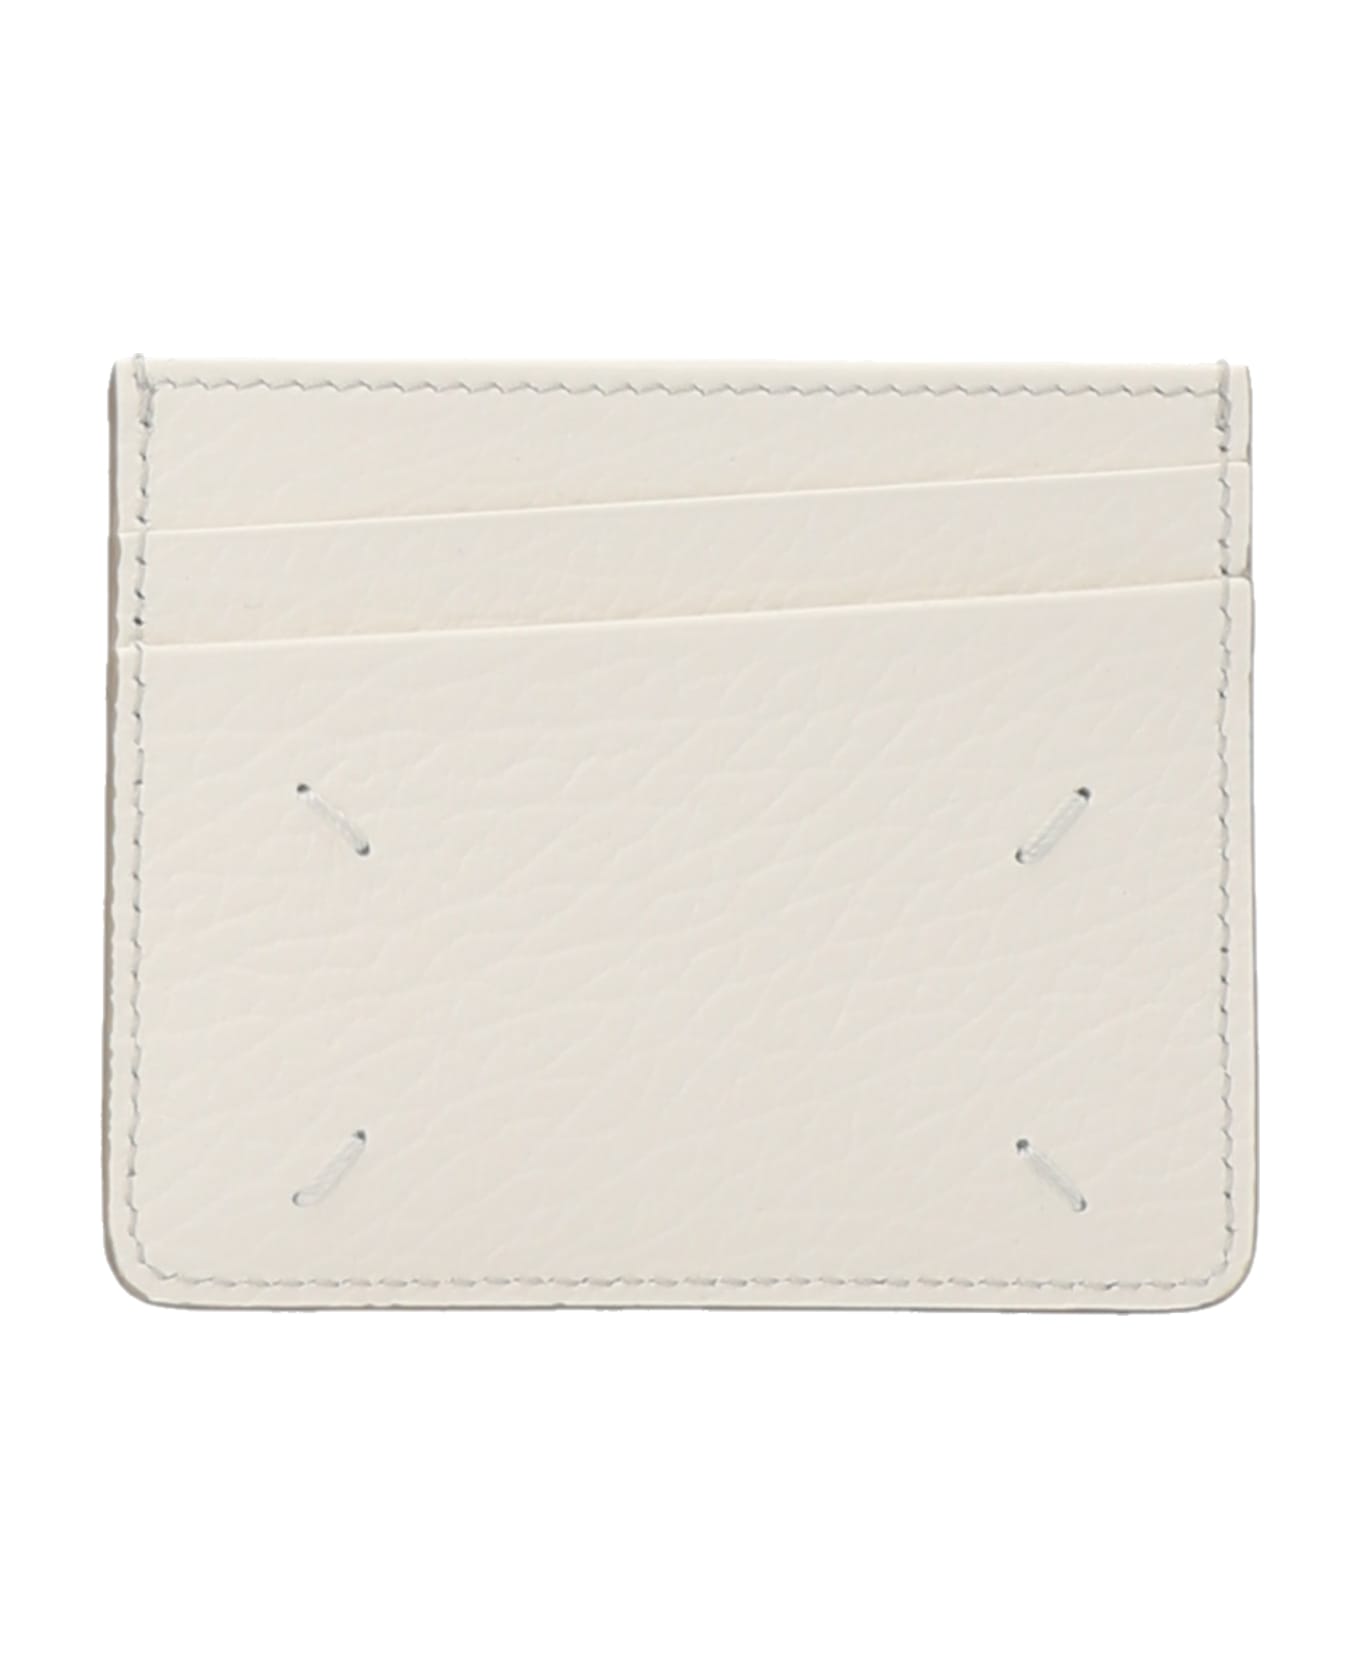 Maison Margiela 'stitching' Card Holder - White